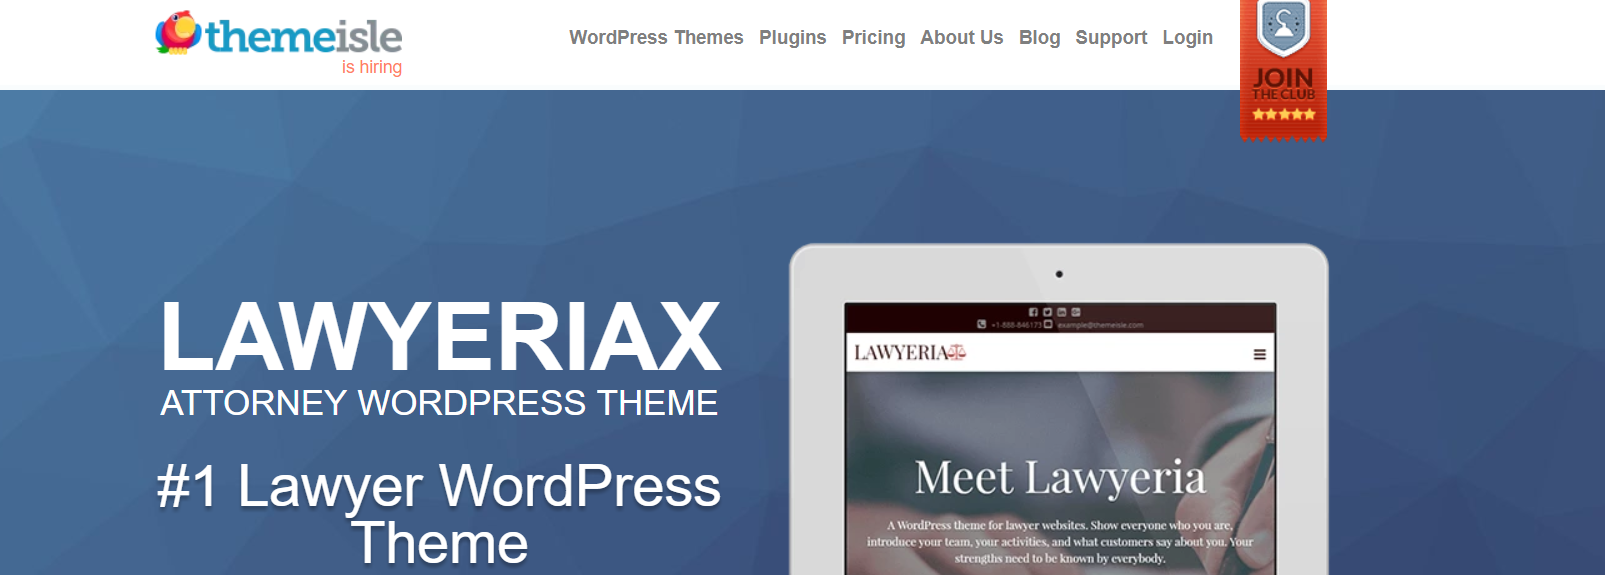 LawyeriaX Lawyer - WordPress Business Themes